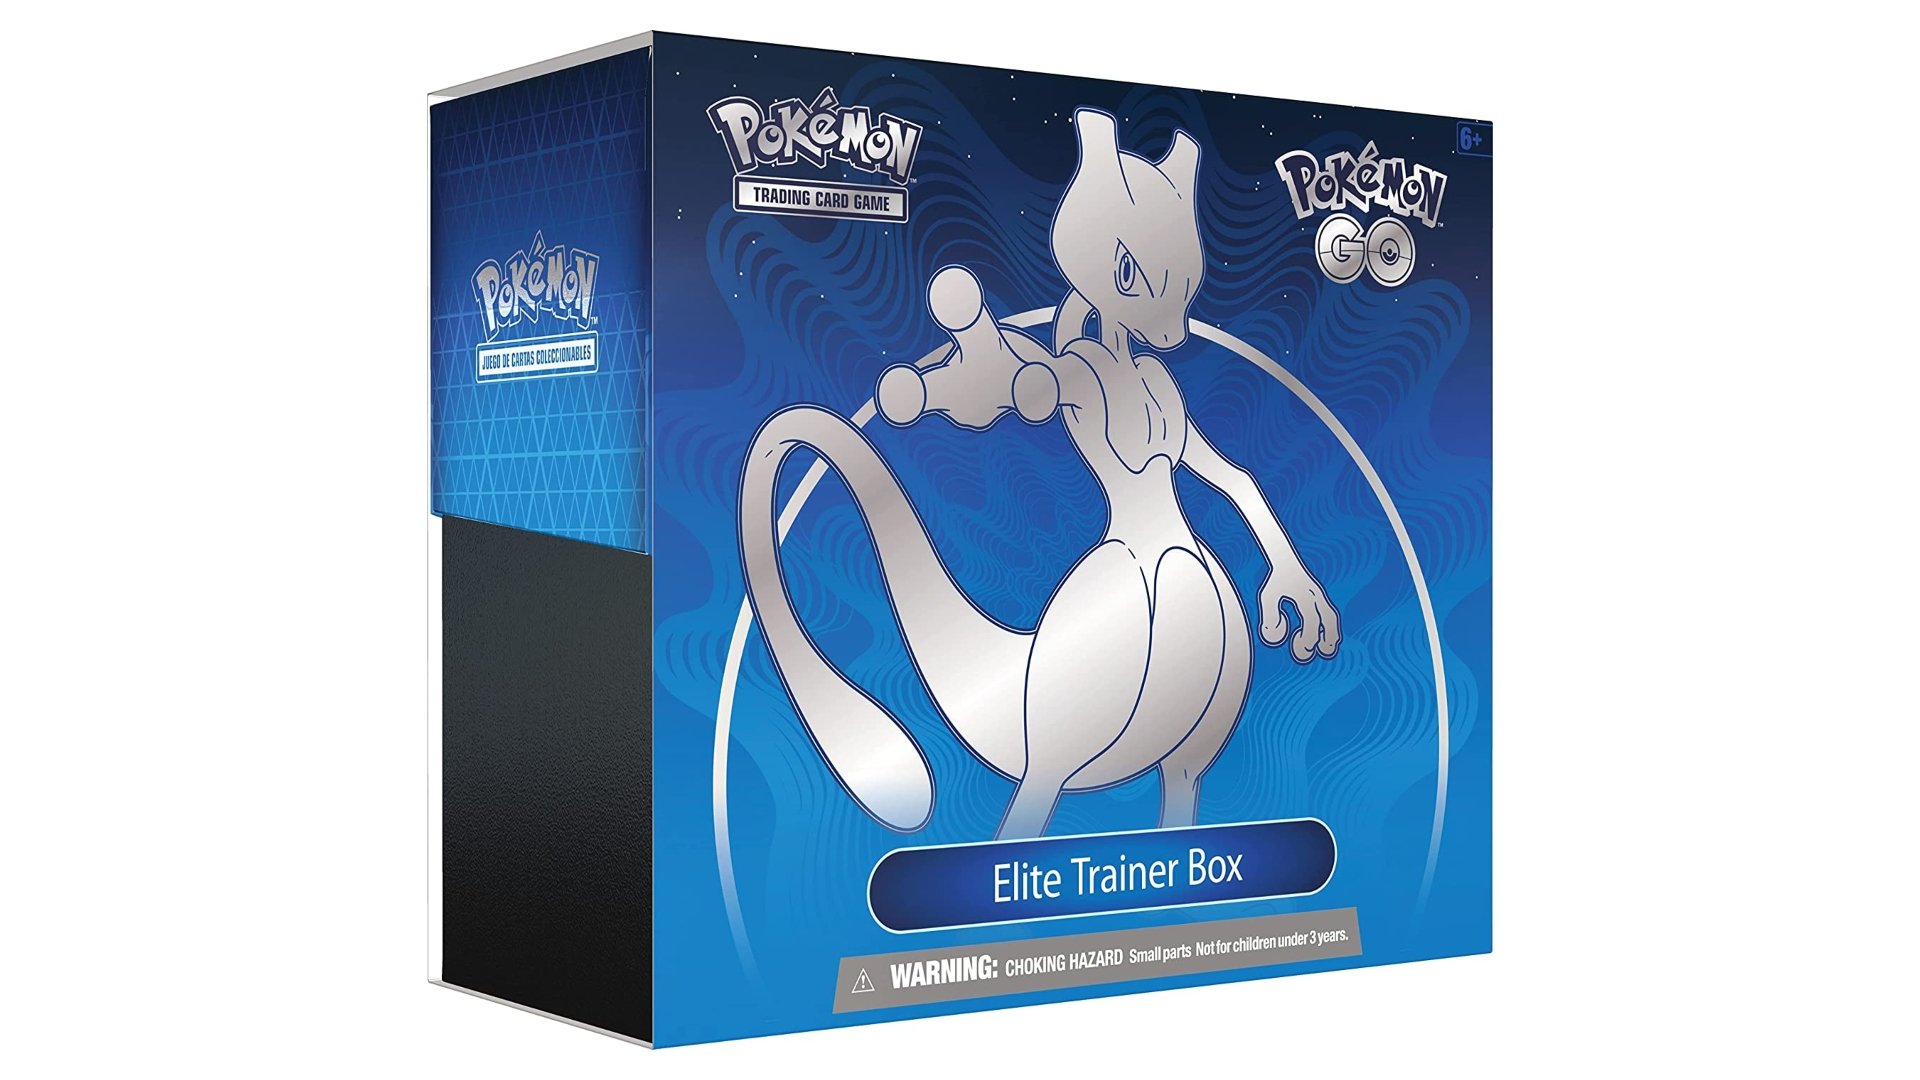 Best Pokémon booster boxes - The Pokémon GO Elite Trainer Box.